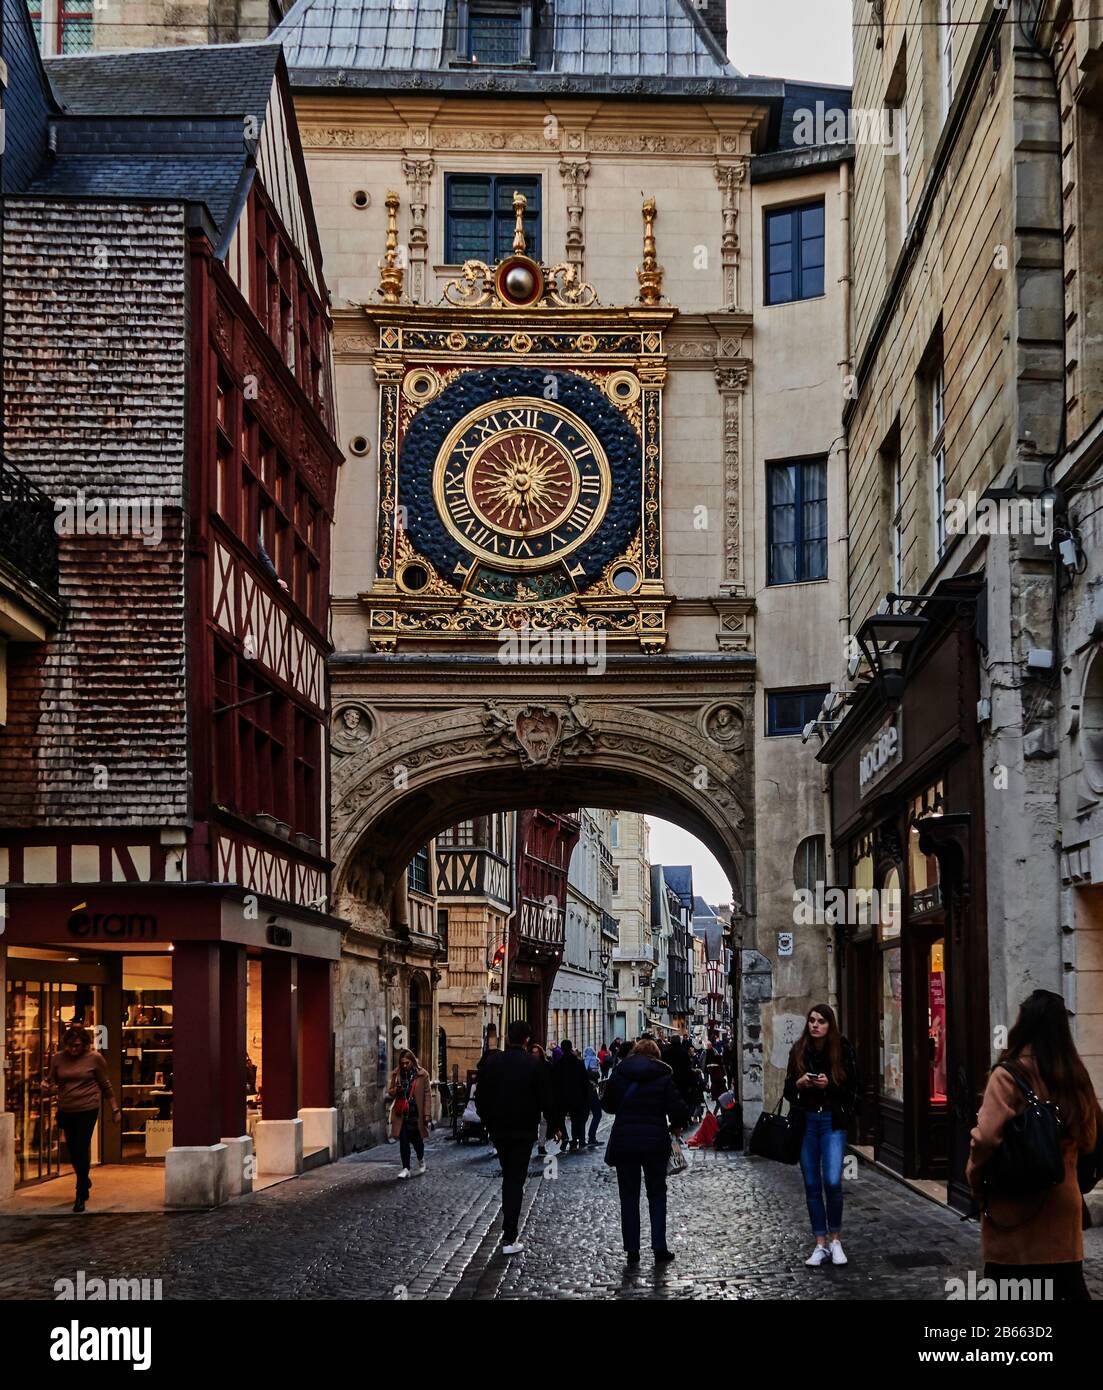 La France, la Normandie, , la Seine Maritime Rouen, , les bâtiments à colombages bordent les rues de la cité médiévale de Rouen, et le gros-Horloge – une horloge astronomique du XIVe siècle – décorent le centre de Rouen, Banque D'Images